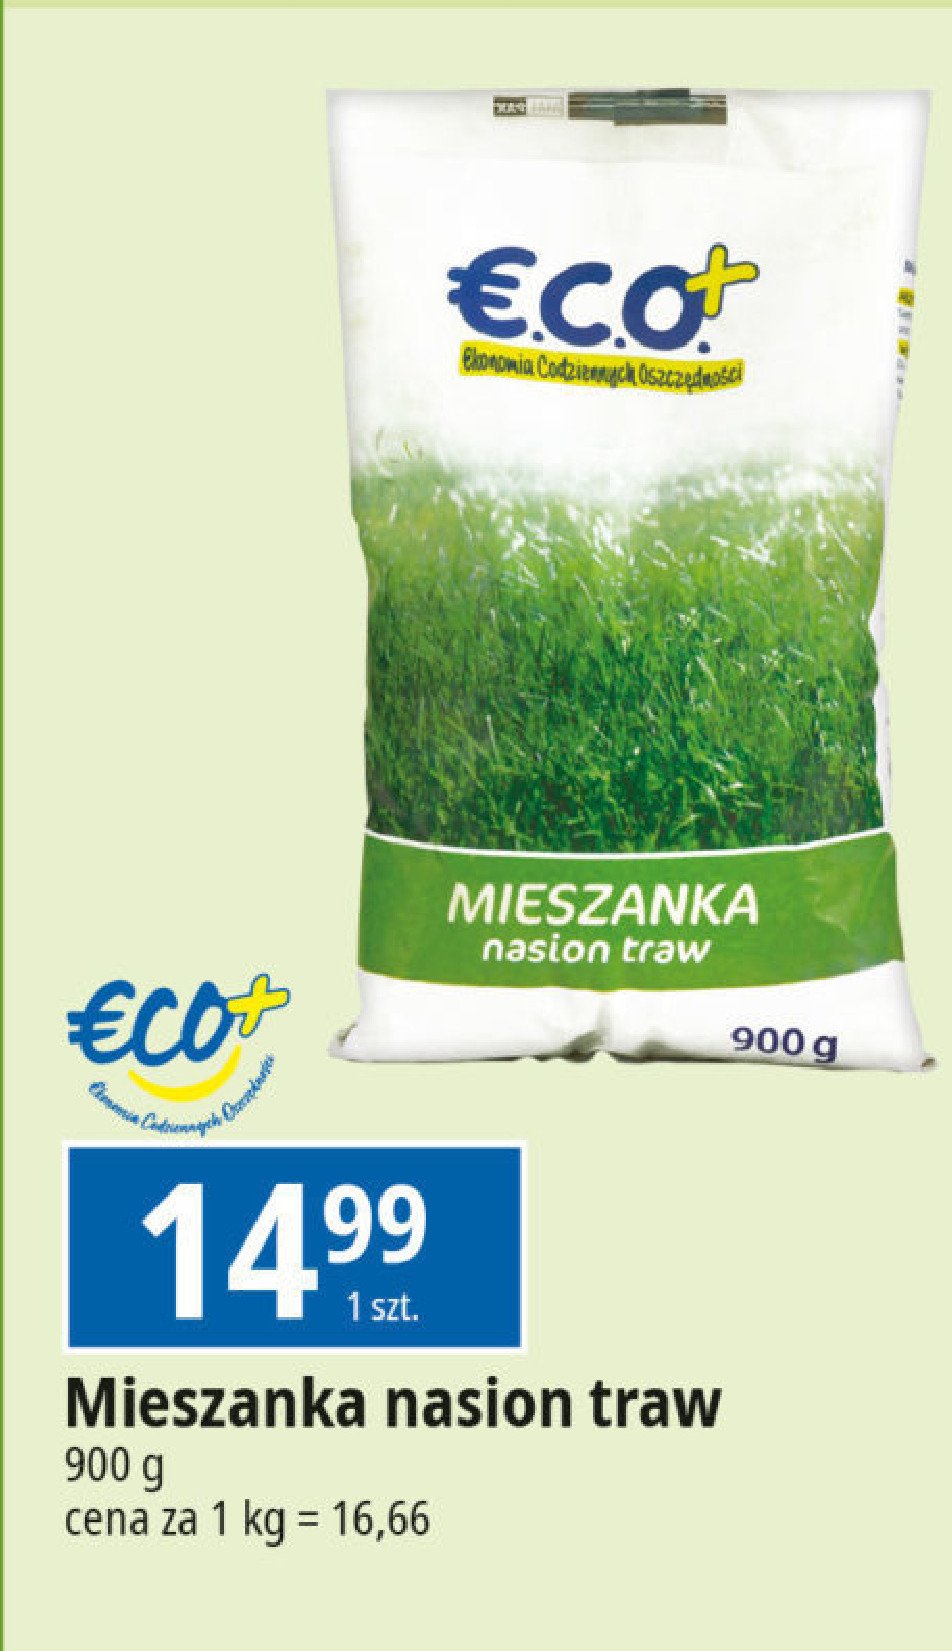 Mieszanka nasiona traw Eco+ promocja